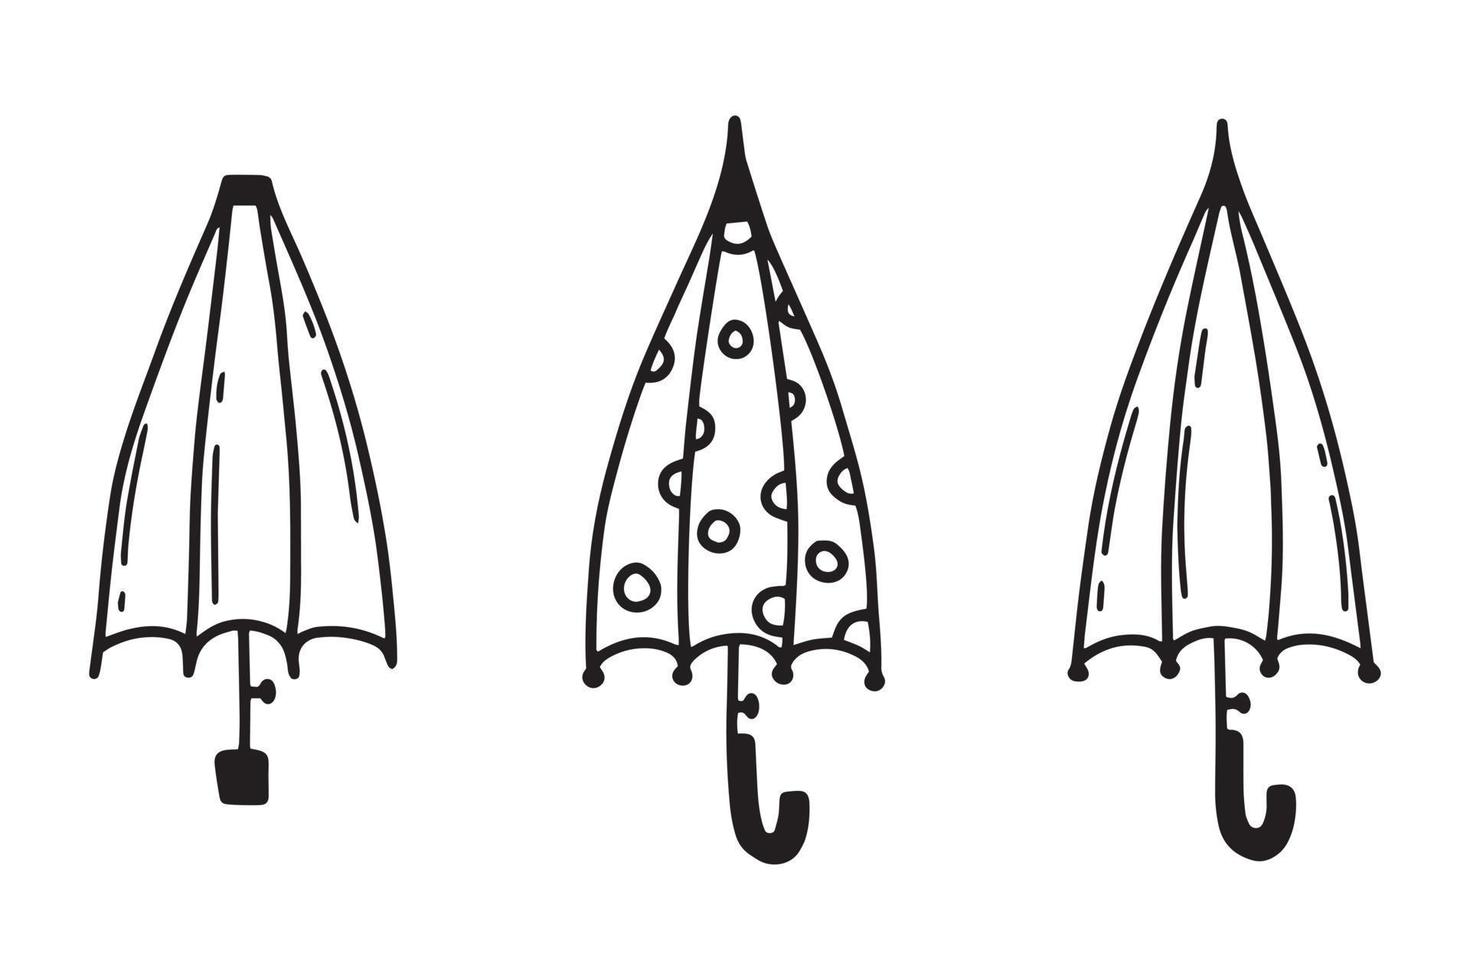 reeks van Gesloten paraplu's. tekening paraplu's. vector illustratie.